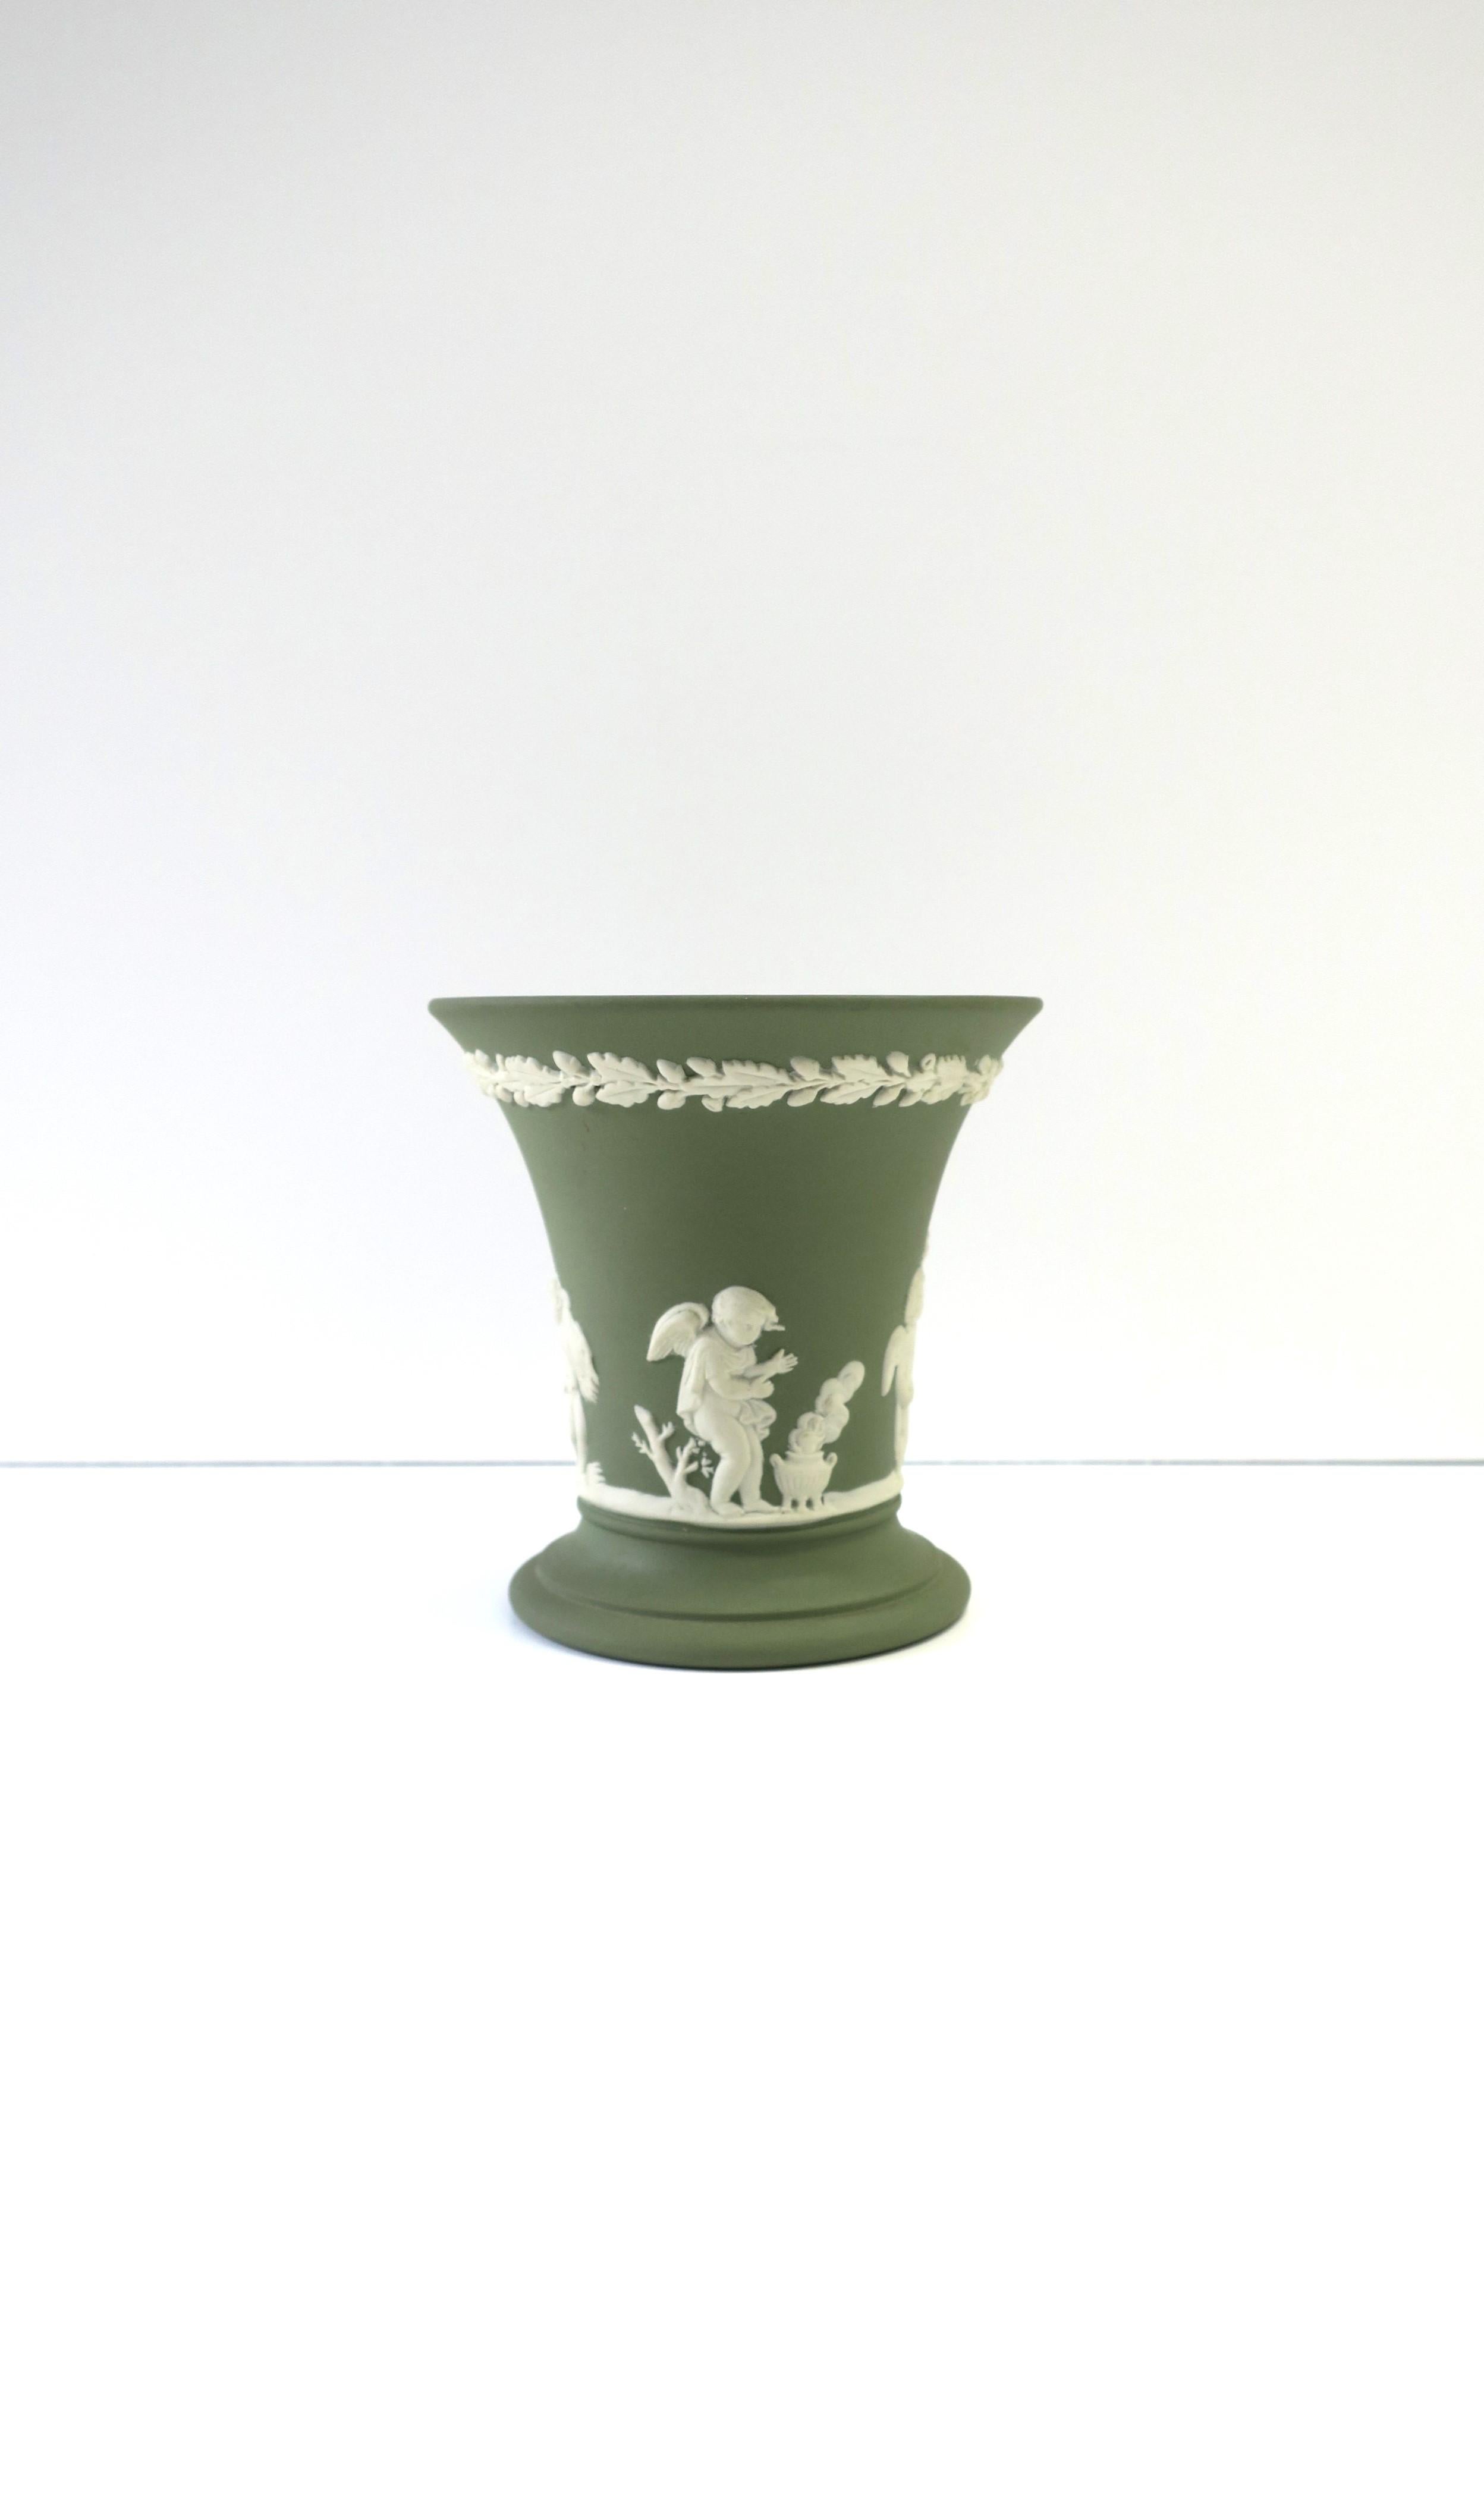 Magnifique vase en grès mat Jasperware de style néoclassique, vert sauge et blanc, Angleterre, 1973. L'extérieur du vase est orné d'une scène en relief blanc de style Renaissance/Néoclassique. Toutes les marques d'authentification sur le fond, y